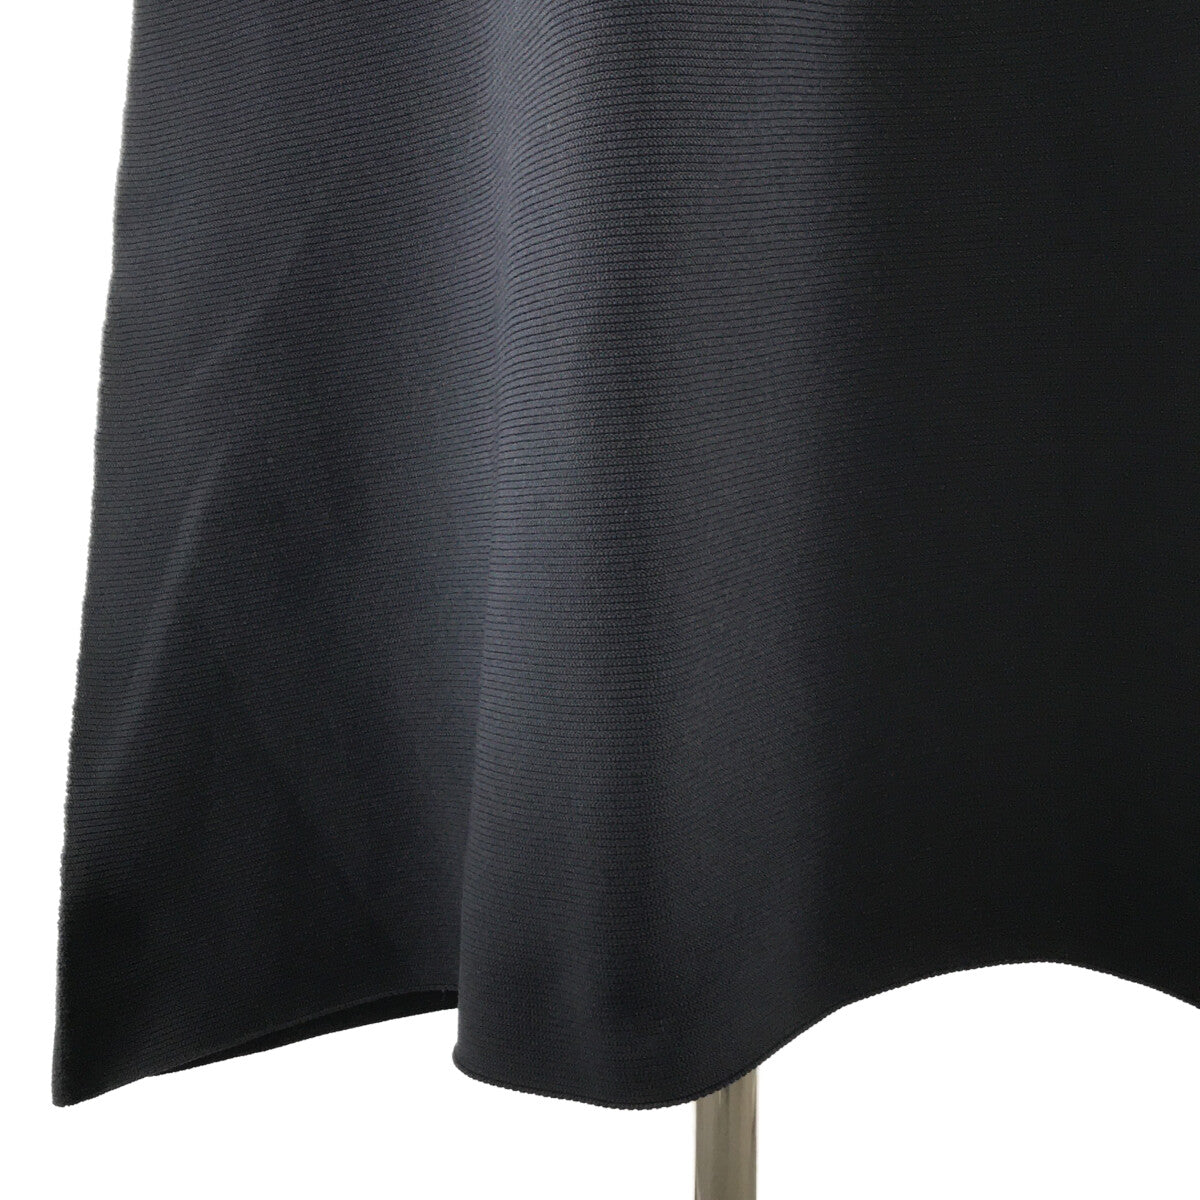 CFCL / シーエフシーエル | POTTERY KAFTAN DRESS ポッタリー カフタン ドレス ニット ワンピース | 1 |